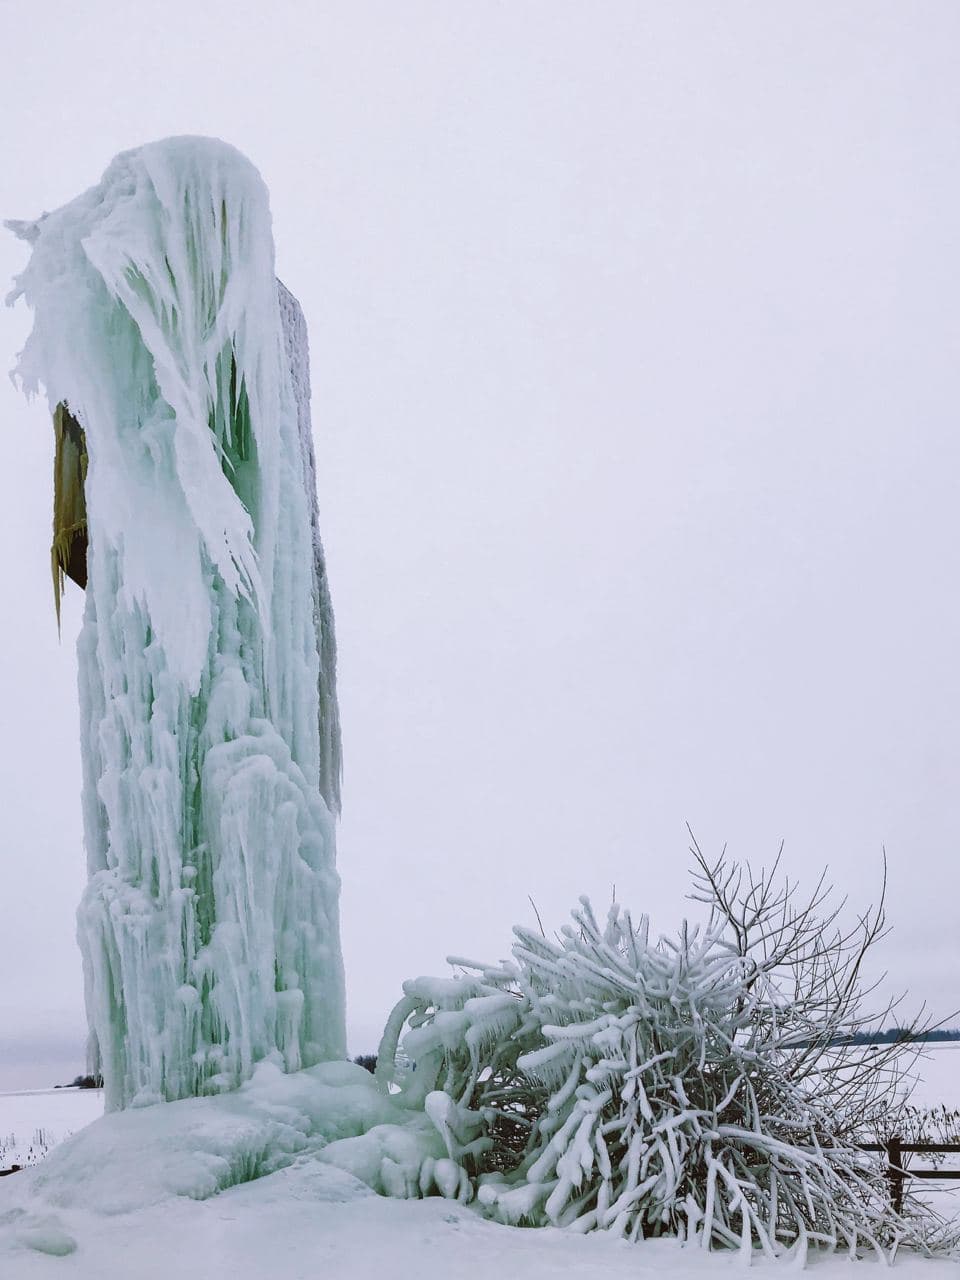 Фото дня: водонапорная башня стала ледяным арт-объектом на Воложинщине